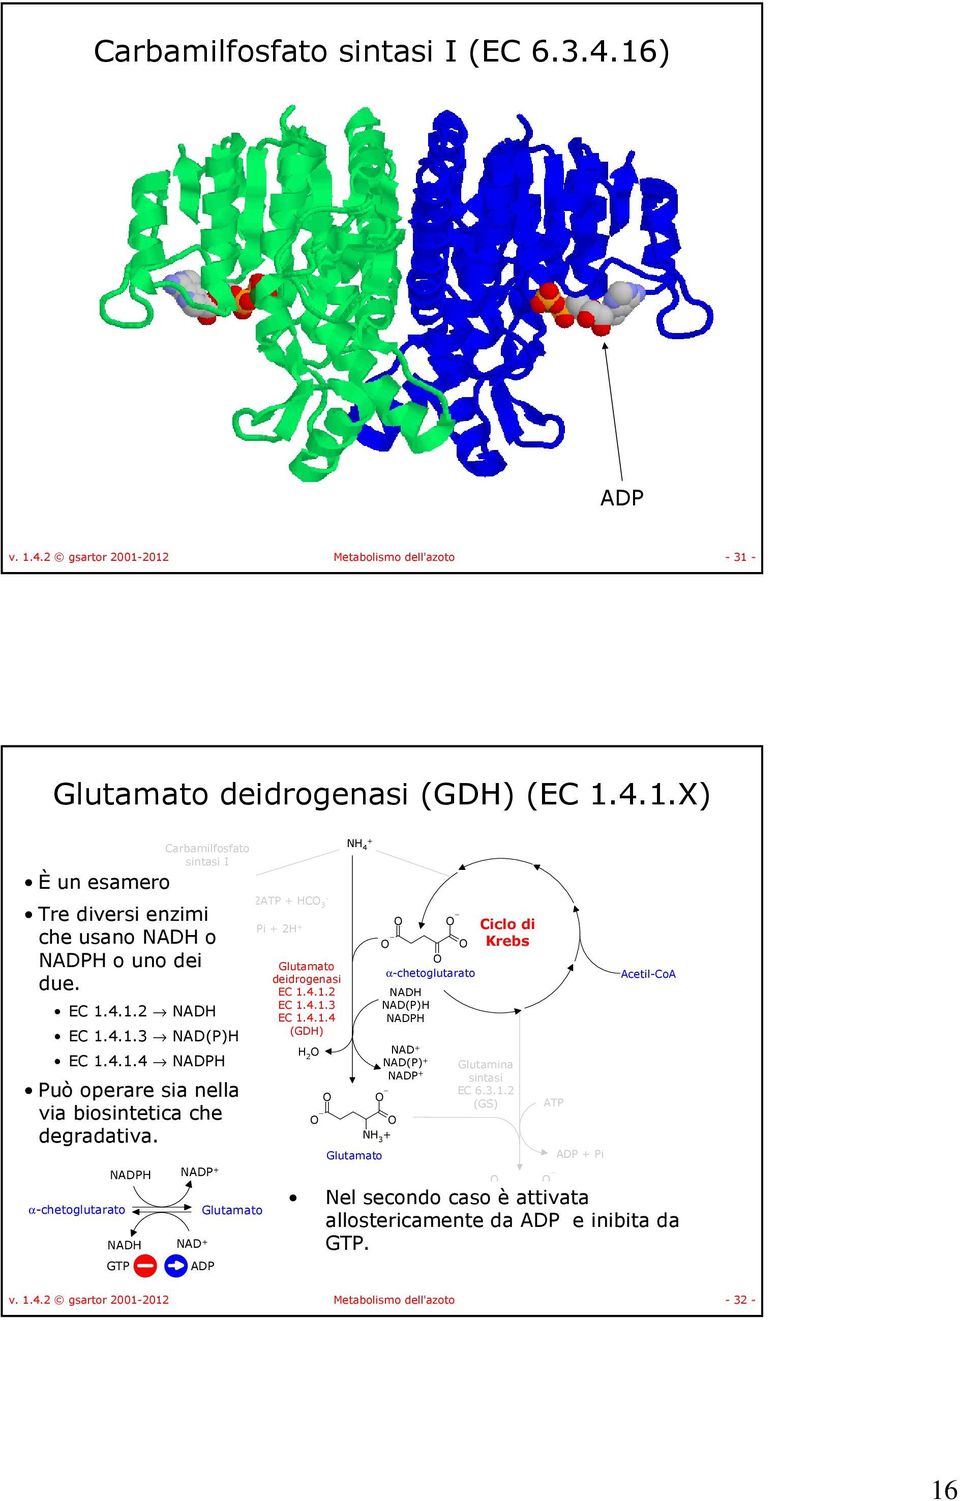 α-chetoglutarato AD AD AD AD GT 2 C 3-2AD i 2 Glutamato AD Glutamato deidrogenasi EC 1.4.1.2 EC 1.4.1.3 EC 1.4.1.4 (GD) 2 4 α-chetoglutarato AD AD() AD AD AD() AD 3 Glutamato Ciclo di Krebs Glutamina EC 6.